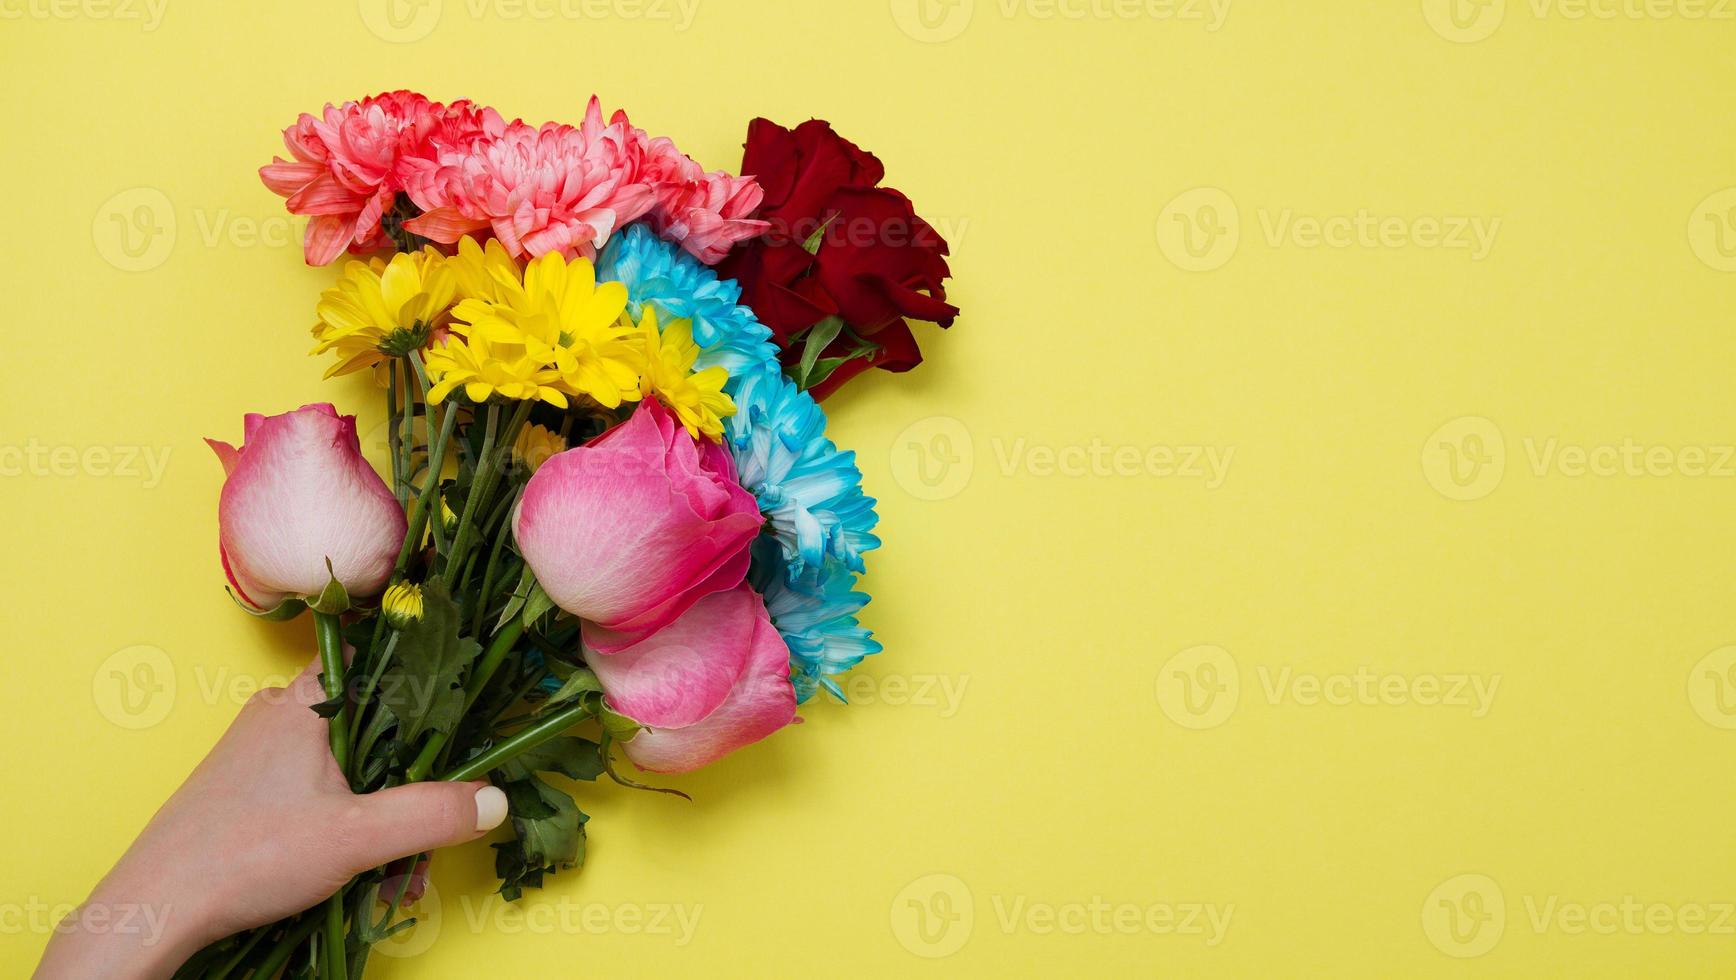 stuur bloemen online concept. bloemen bezorgen voor valentijn en moederdag. boeket van rood roze rozen geïsoleerd op violette achtergrond. ansichtkaartontwerp met prachtige natuurroos. bovenaanzicht. ruimte kopiëren. foto